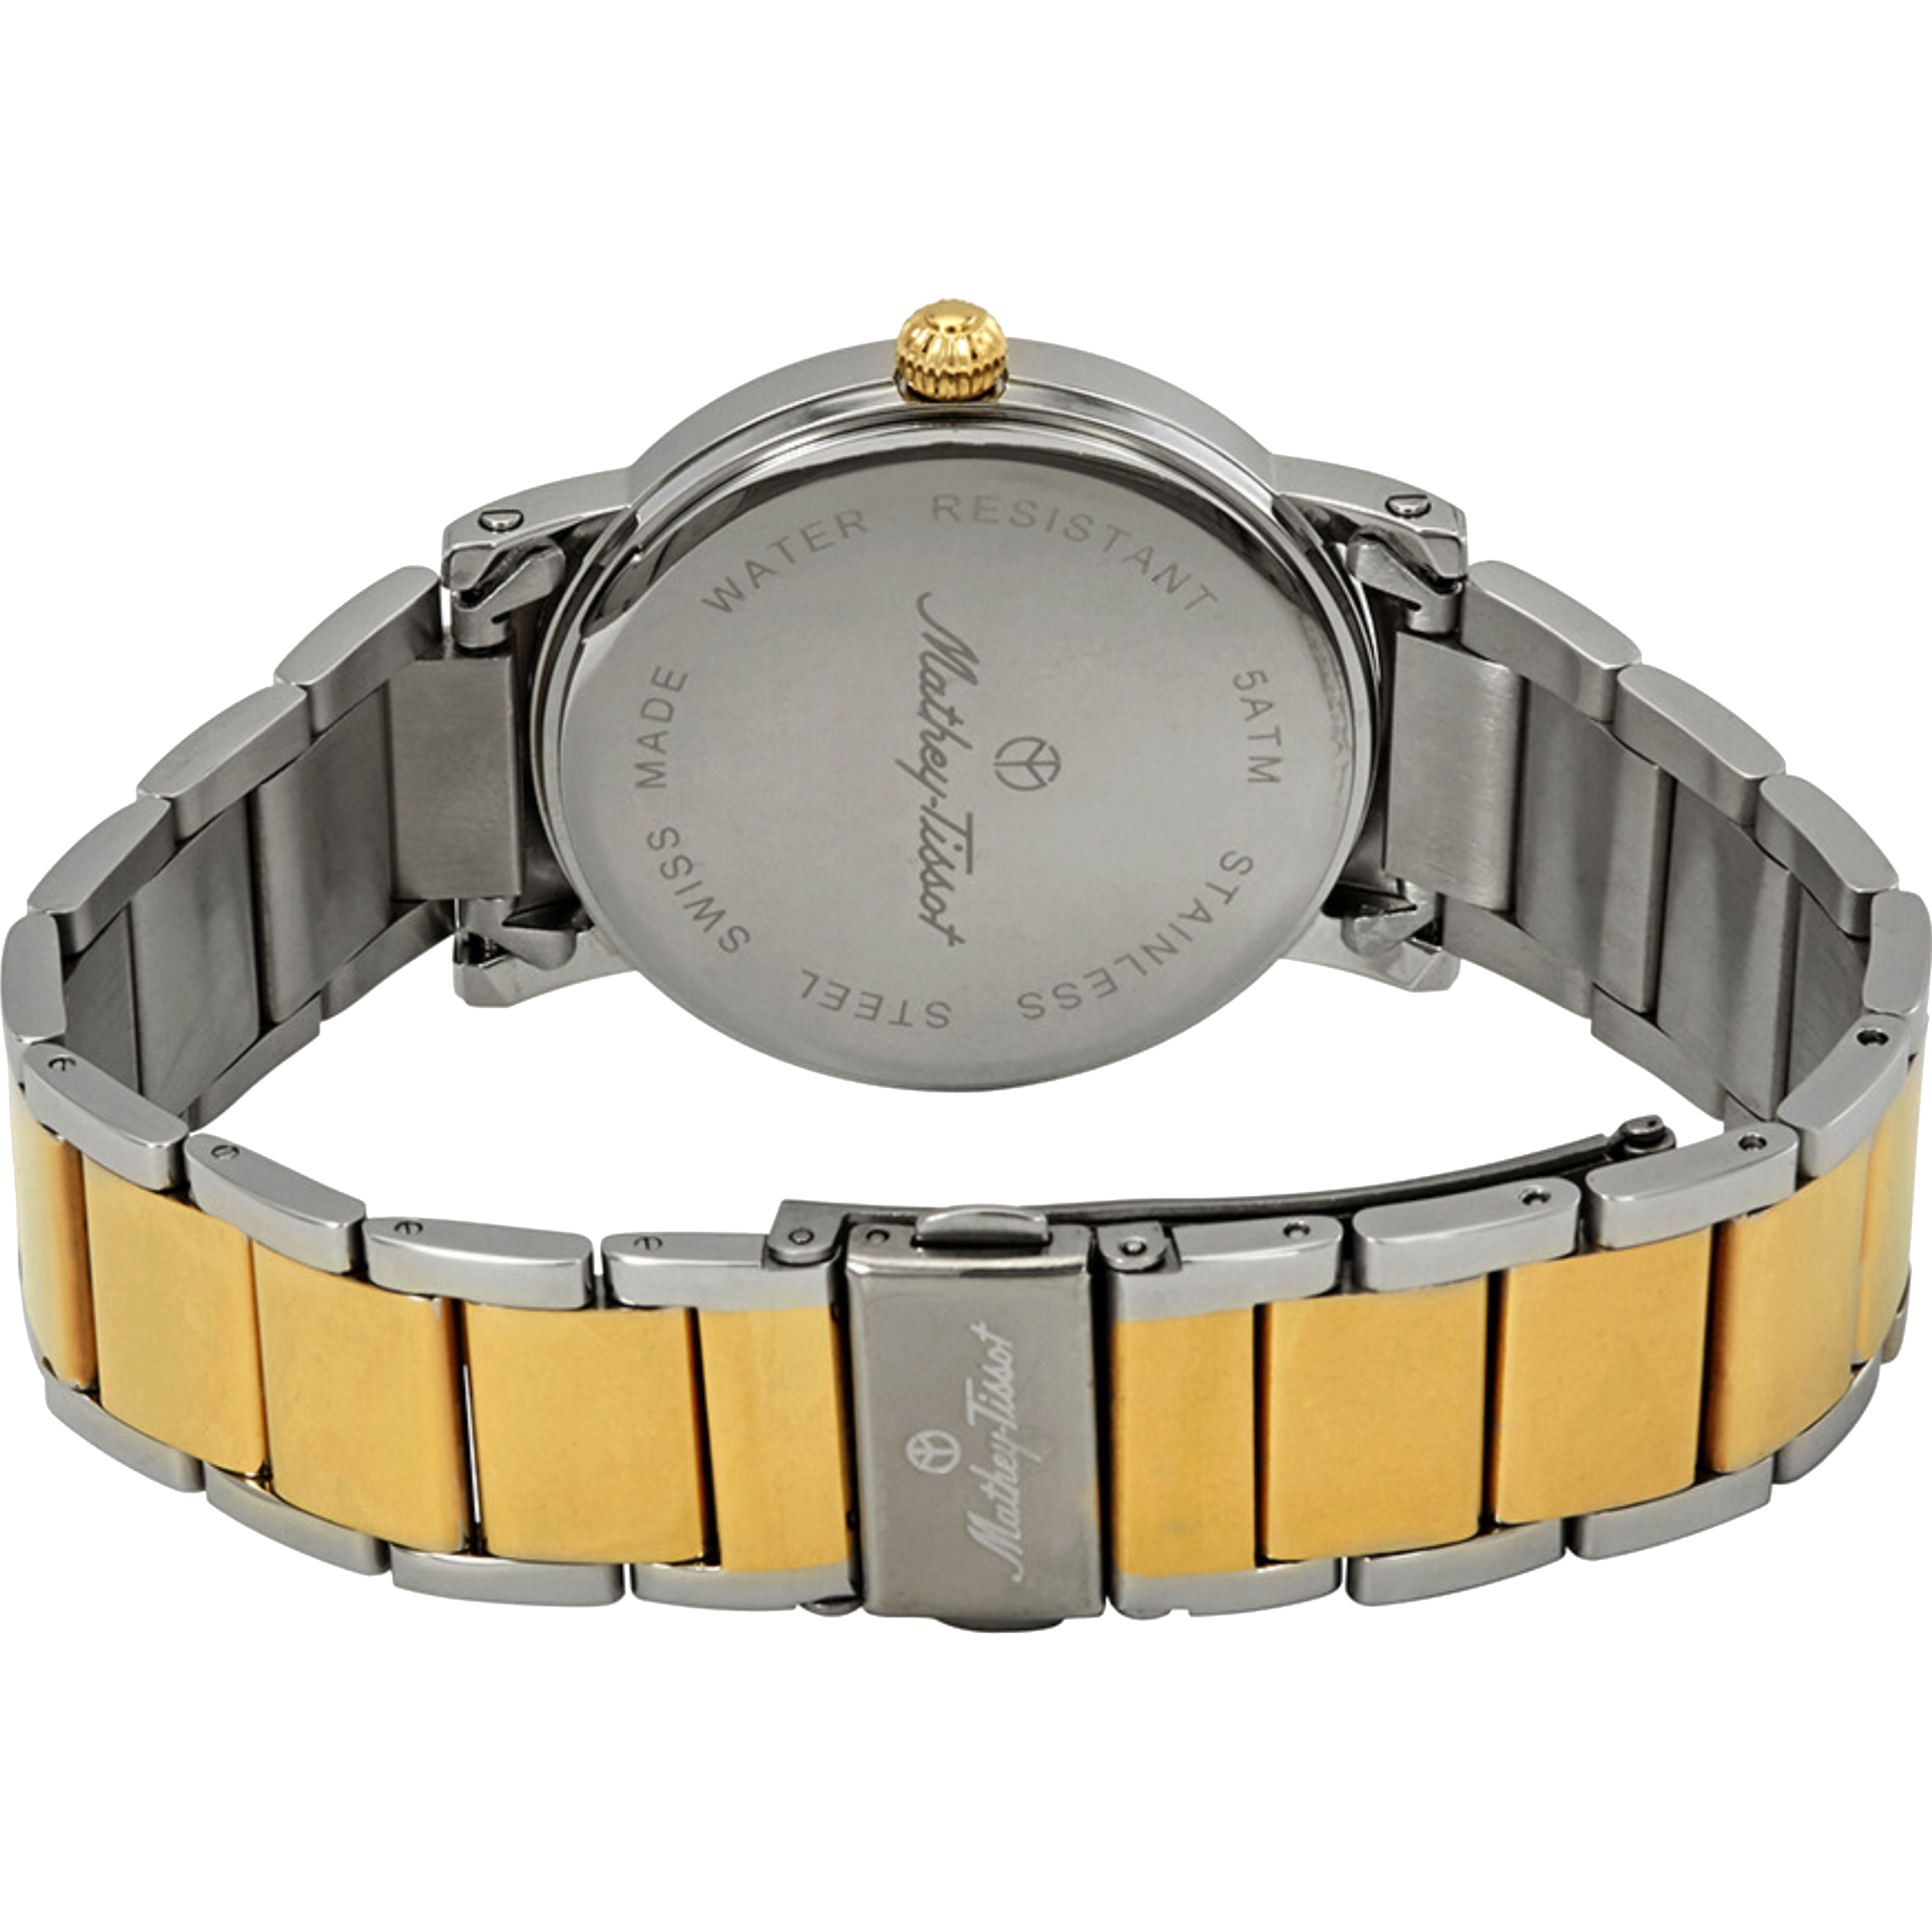 שעון יד לגבר Mathey Tissot H611251MBR 38mm צבע כסף/זהב ספרות רומיות - אחריות לשנתיים